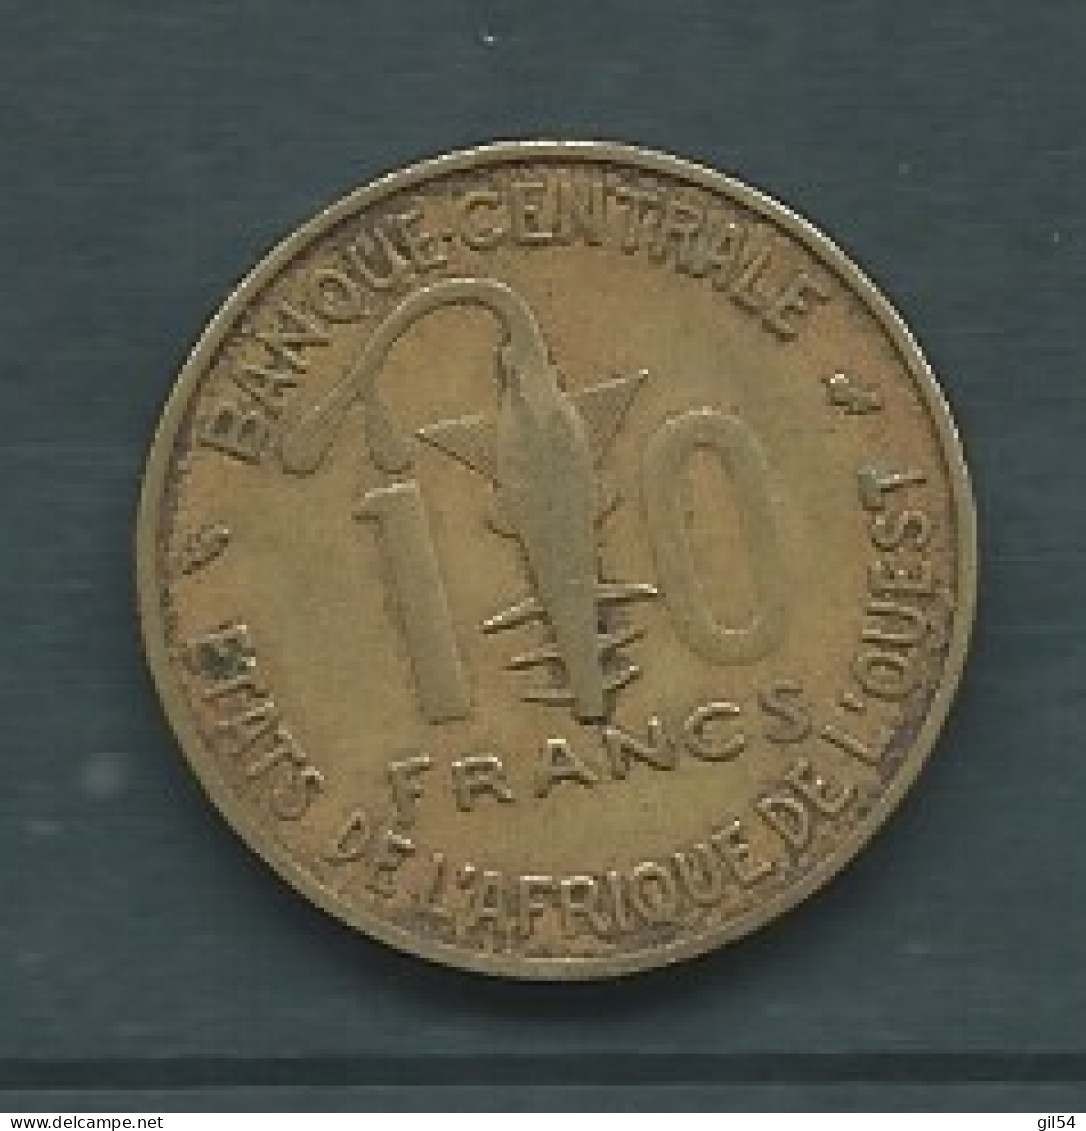 Afrique De L'Ouest - 10 Francs 1970  Pieb 25206 - Autres – Afrique